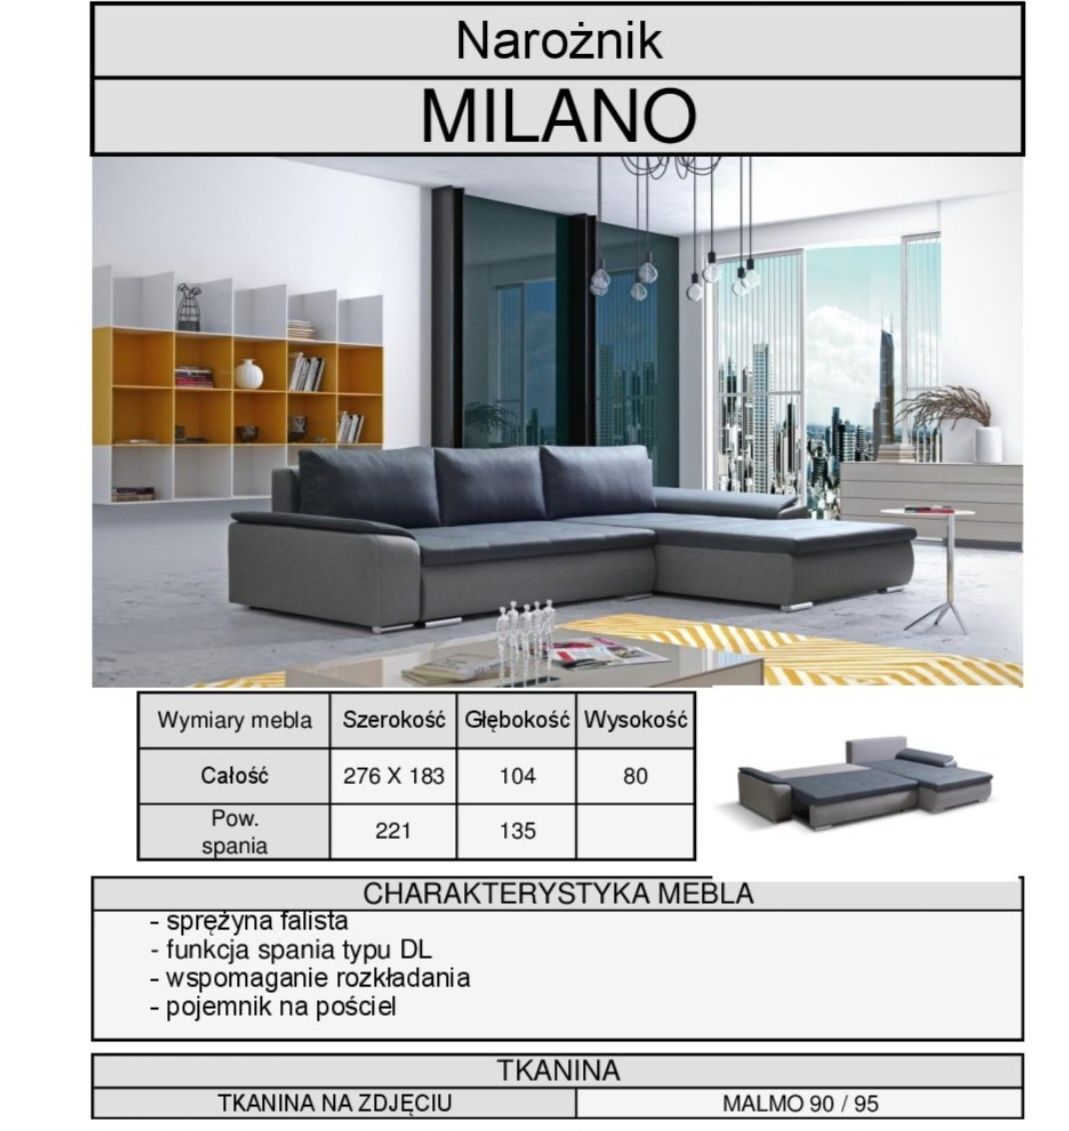 Narożnik Milano prawostronny duży szary